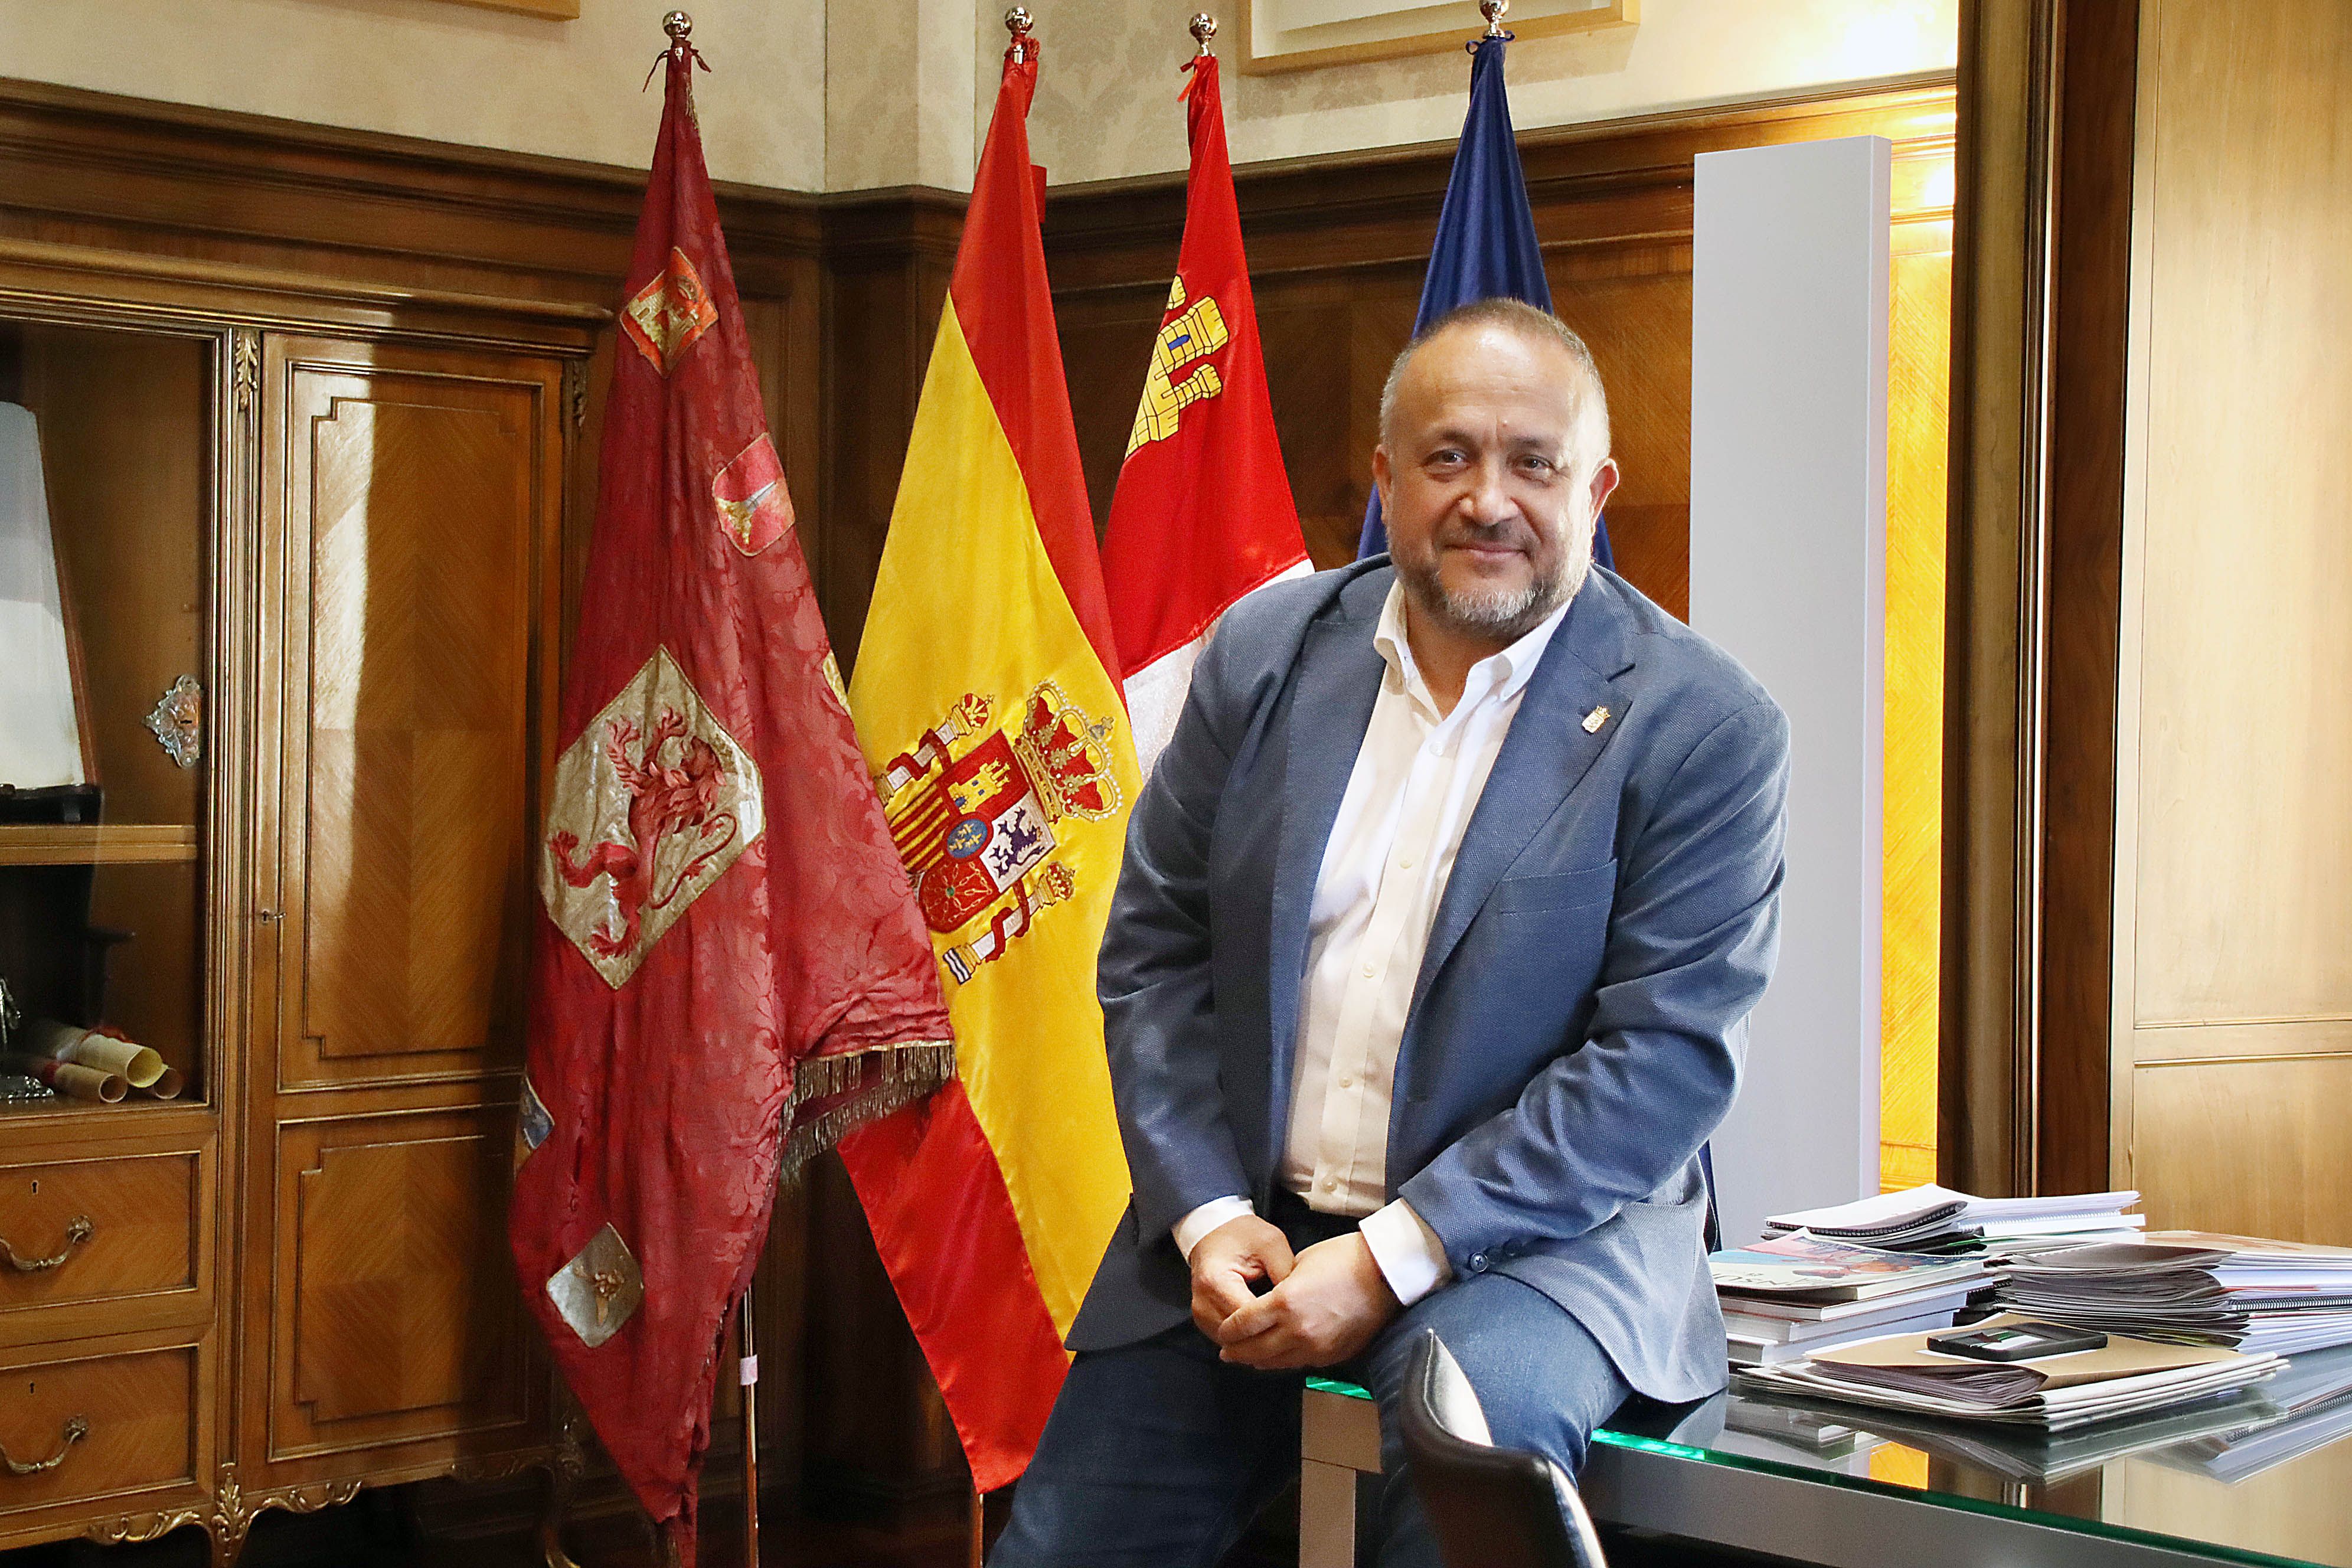  El presidente de la Diputación de León, Gerardo Álvarez Courel, en el Palacio de los Guzmanes. | PEIO GARCÍA (ICAL)